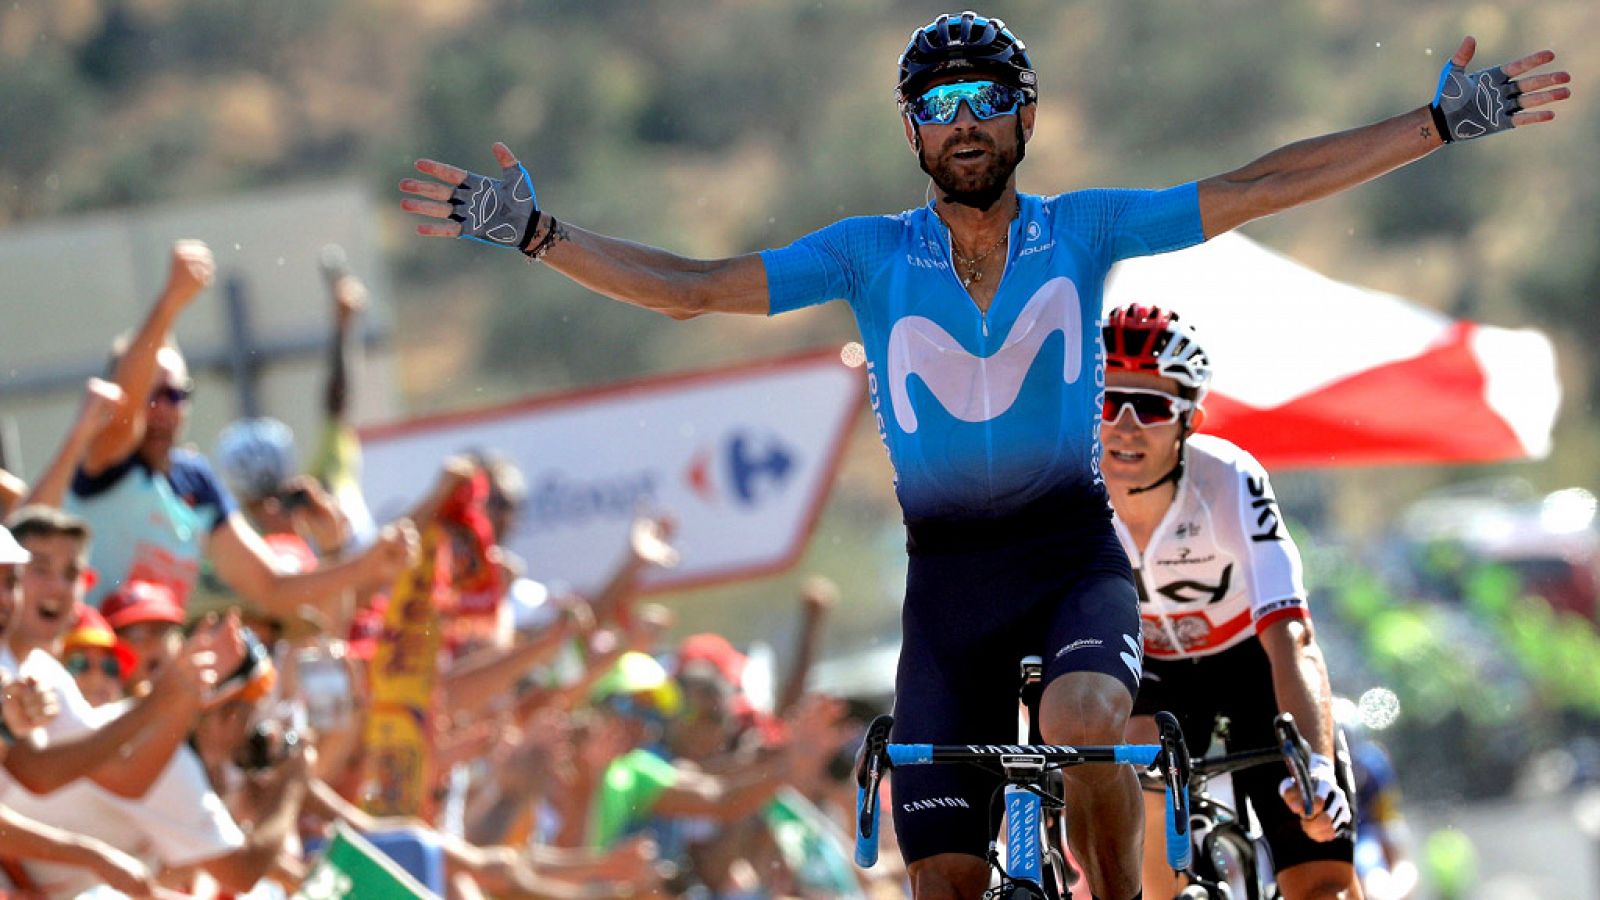 El ciclista español Alejandro Valverde (Movistar Team) ha logrado  este domingo el triunfo en la segunda etapa de la Vuelta a España  2018, sobre un recorrido ligeramente montañoso de 163,5 kilómetros,  con salida en Marbella y meta final en la local